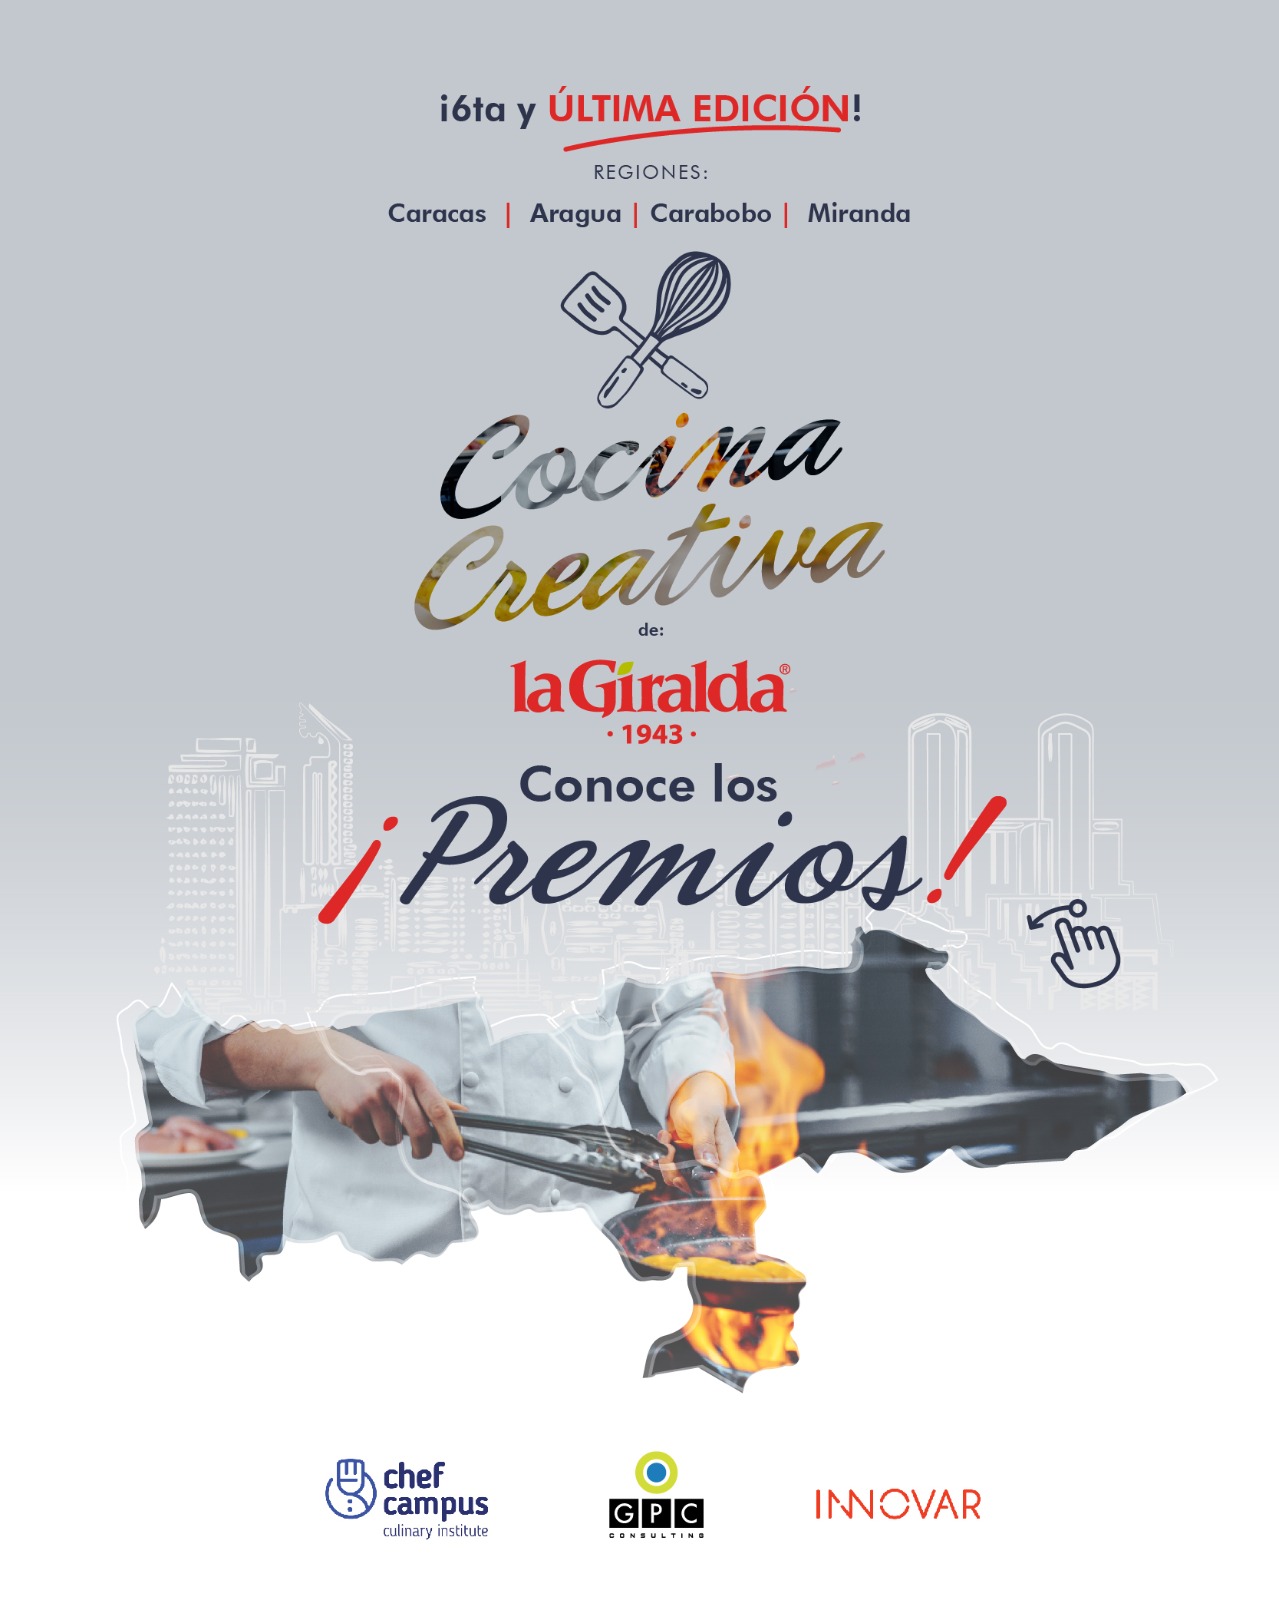 Alimentos La Giralda y Chef Campus Culinary Institute anuncian los premios del “Concurso Cocina Creativa” en su 6ta edición